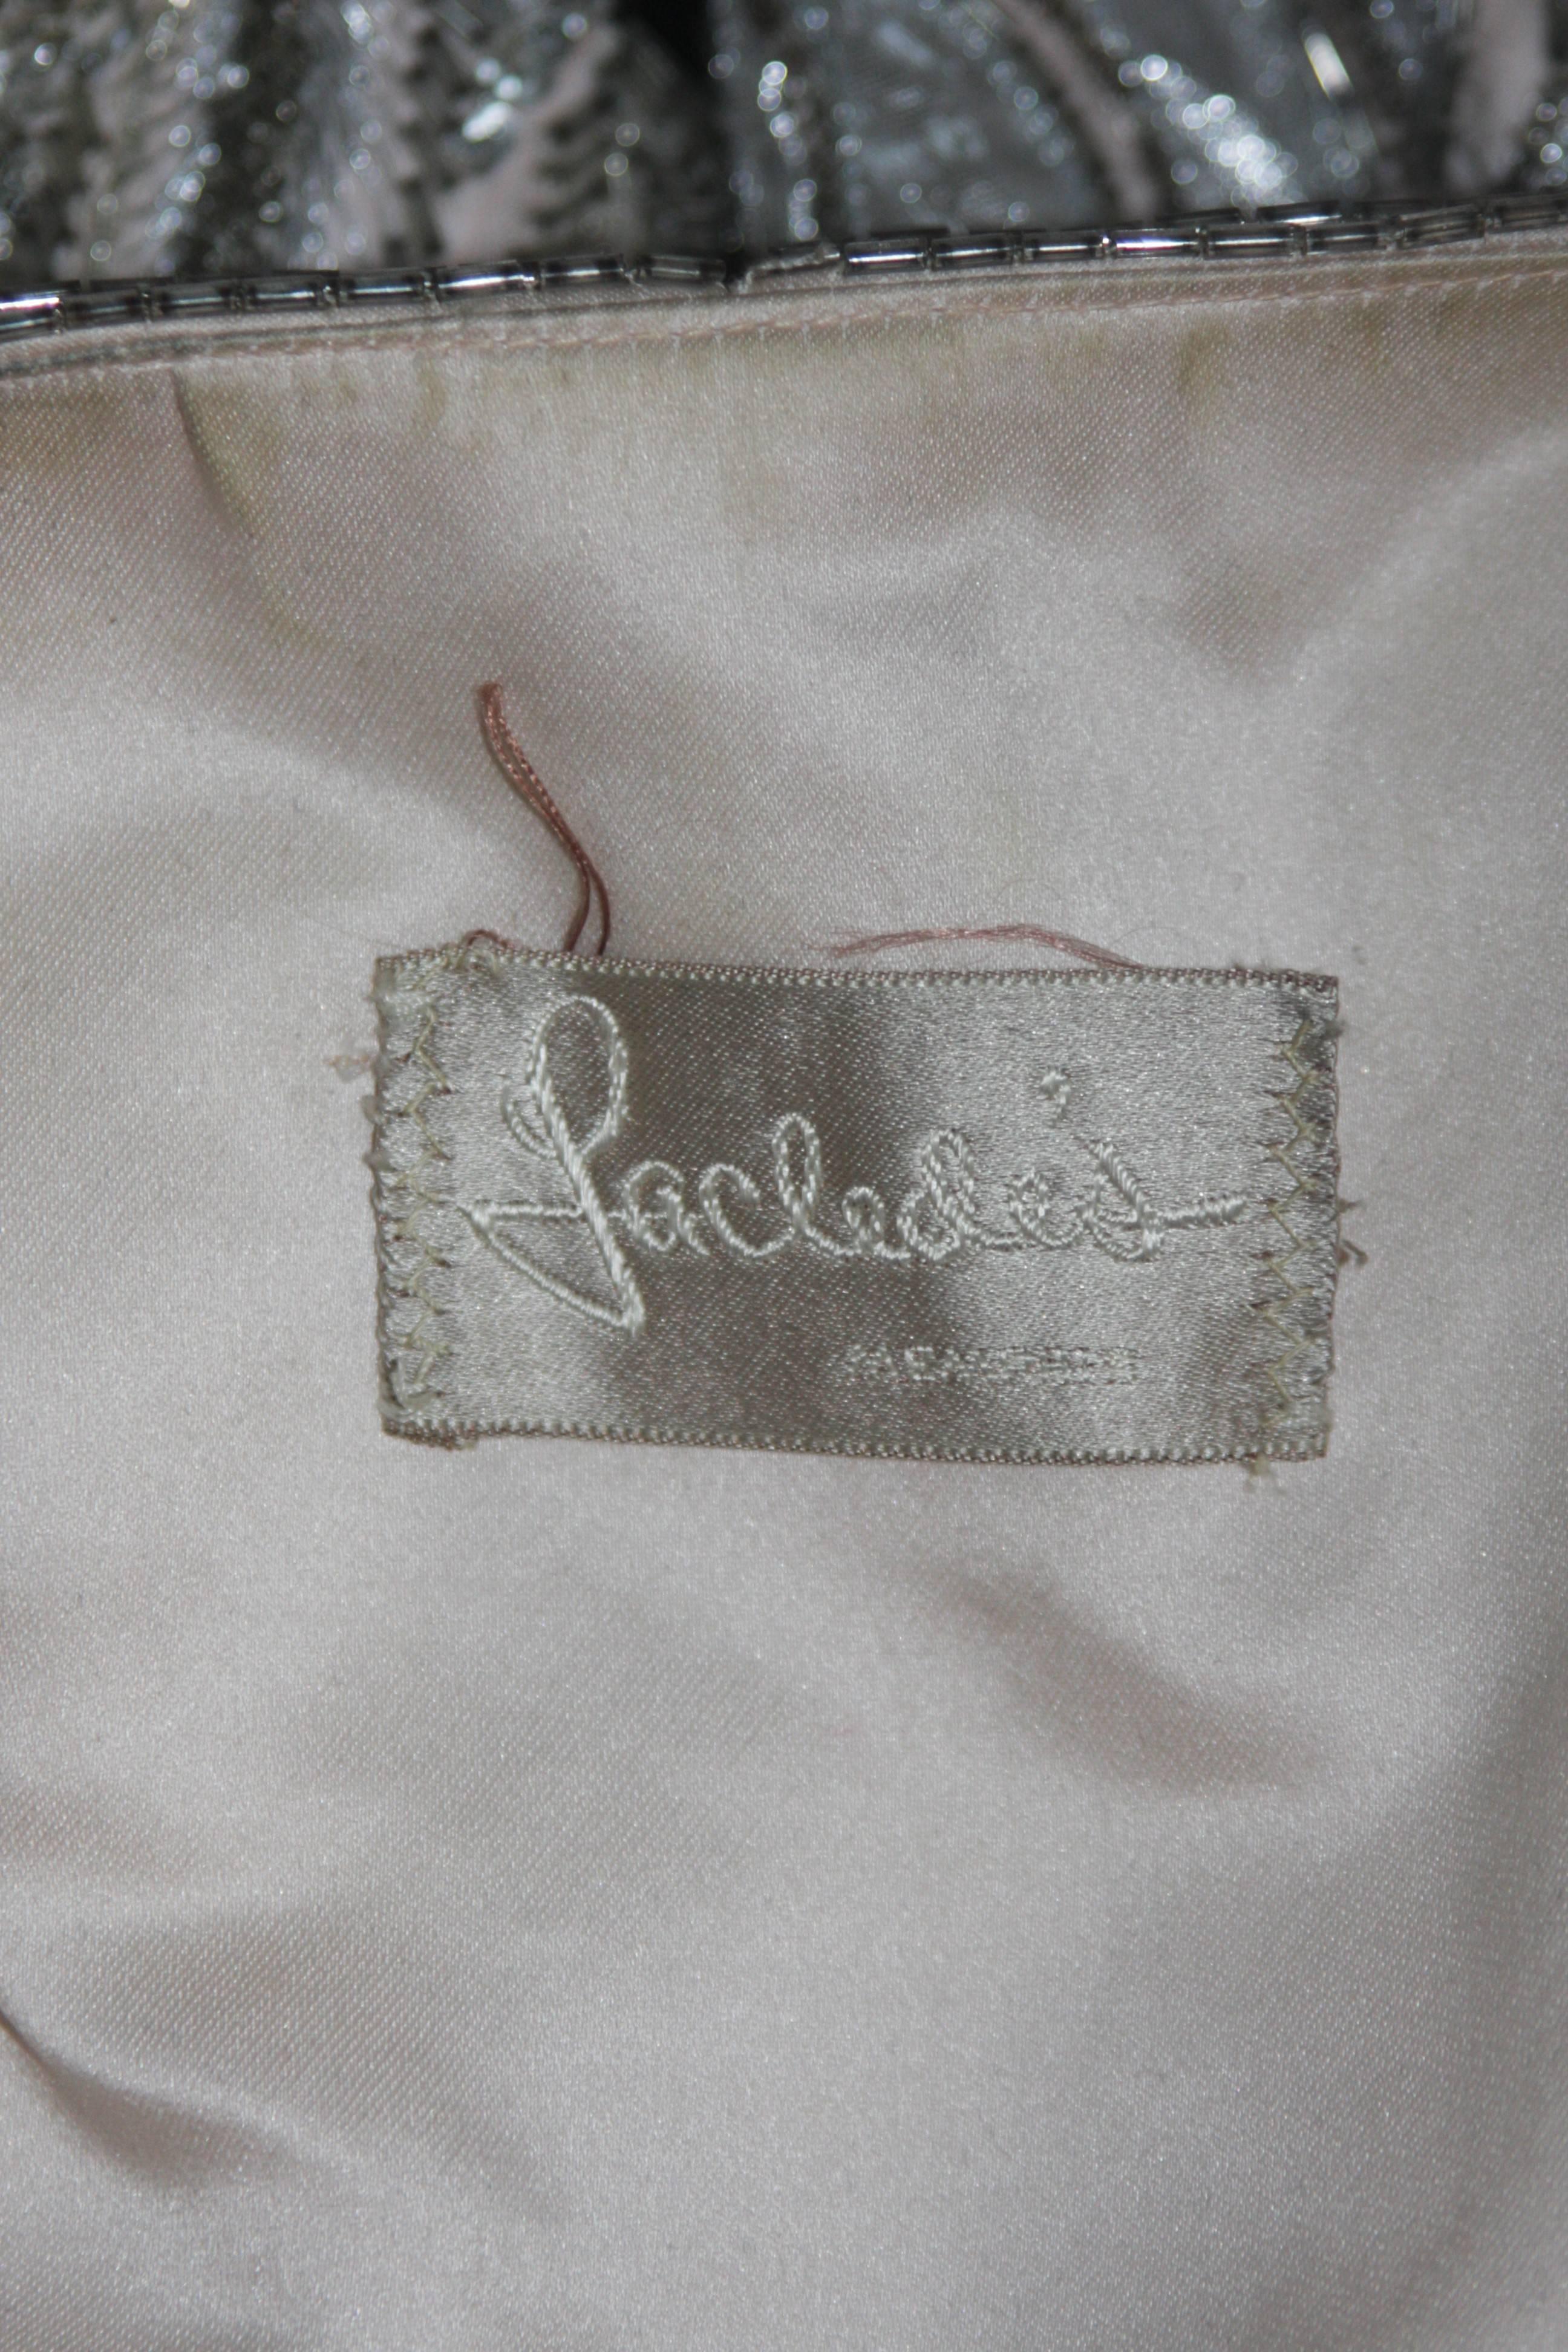 LACLEDES Pink Silk Embellished Jacket Size Medium Large For Sale 3